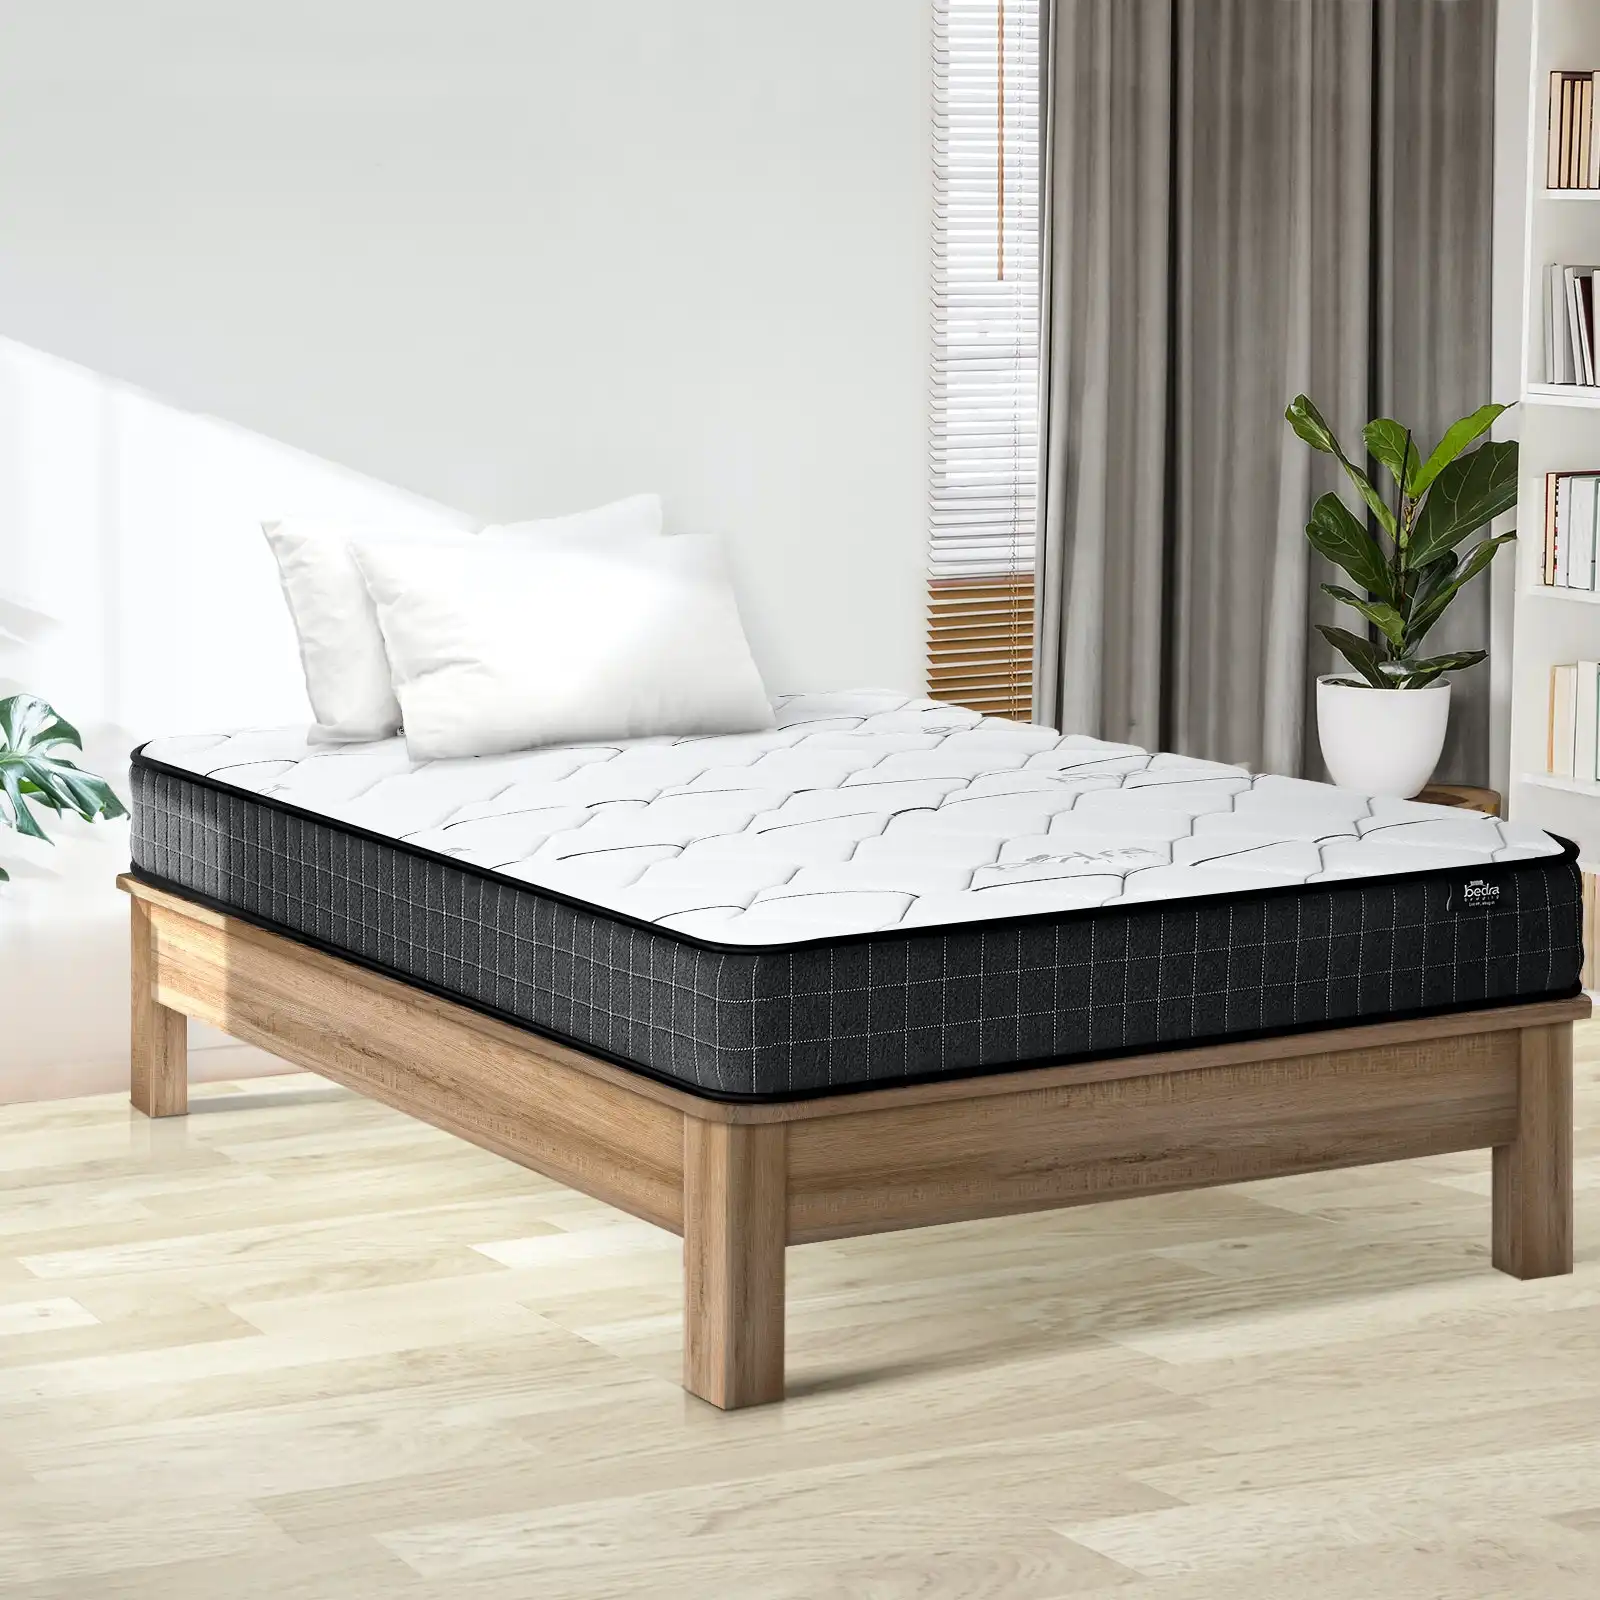 Bedra King Single Mattress Bed Medium Firm Foam Bonnell Spring 16cm